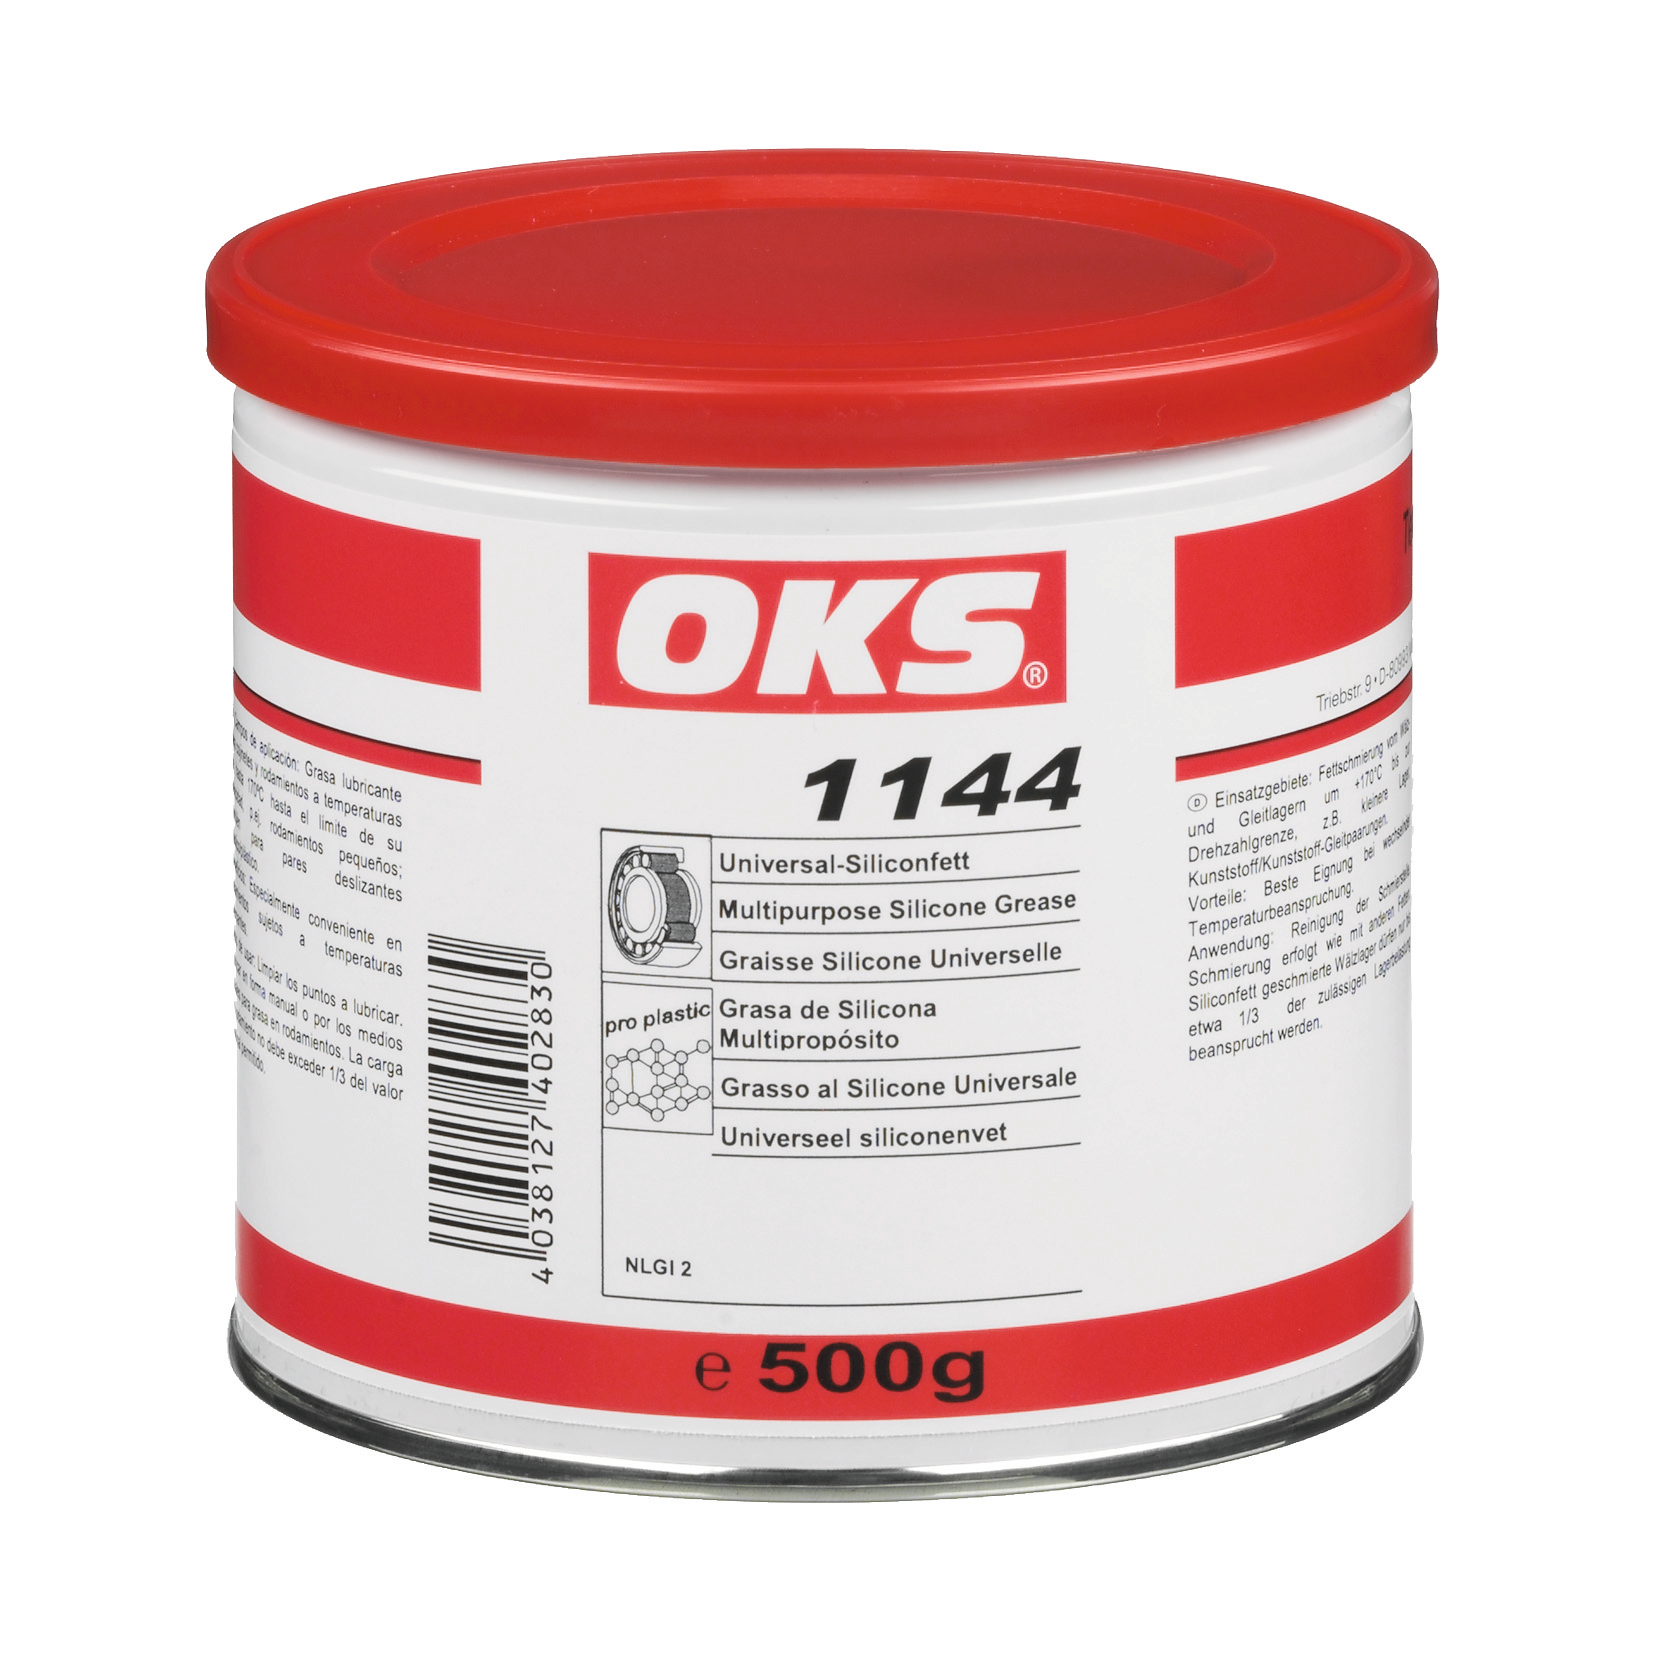 OKS1144-500GR OKS 1144 is een universeel siliconenvet voor lagers bij wisselende temperatuurbelasting en middelhoge snelheden.